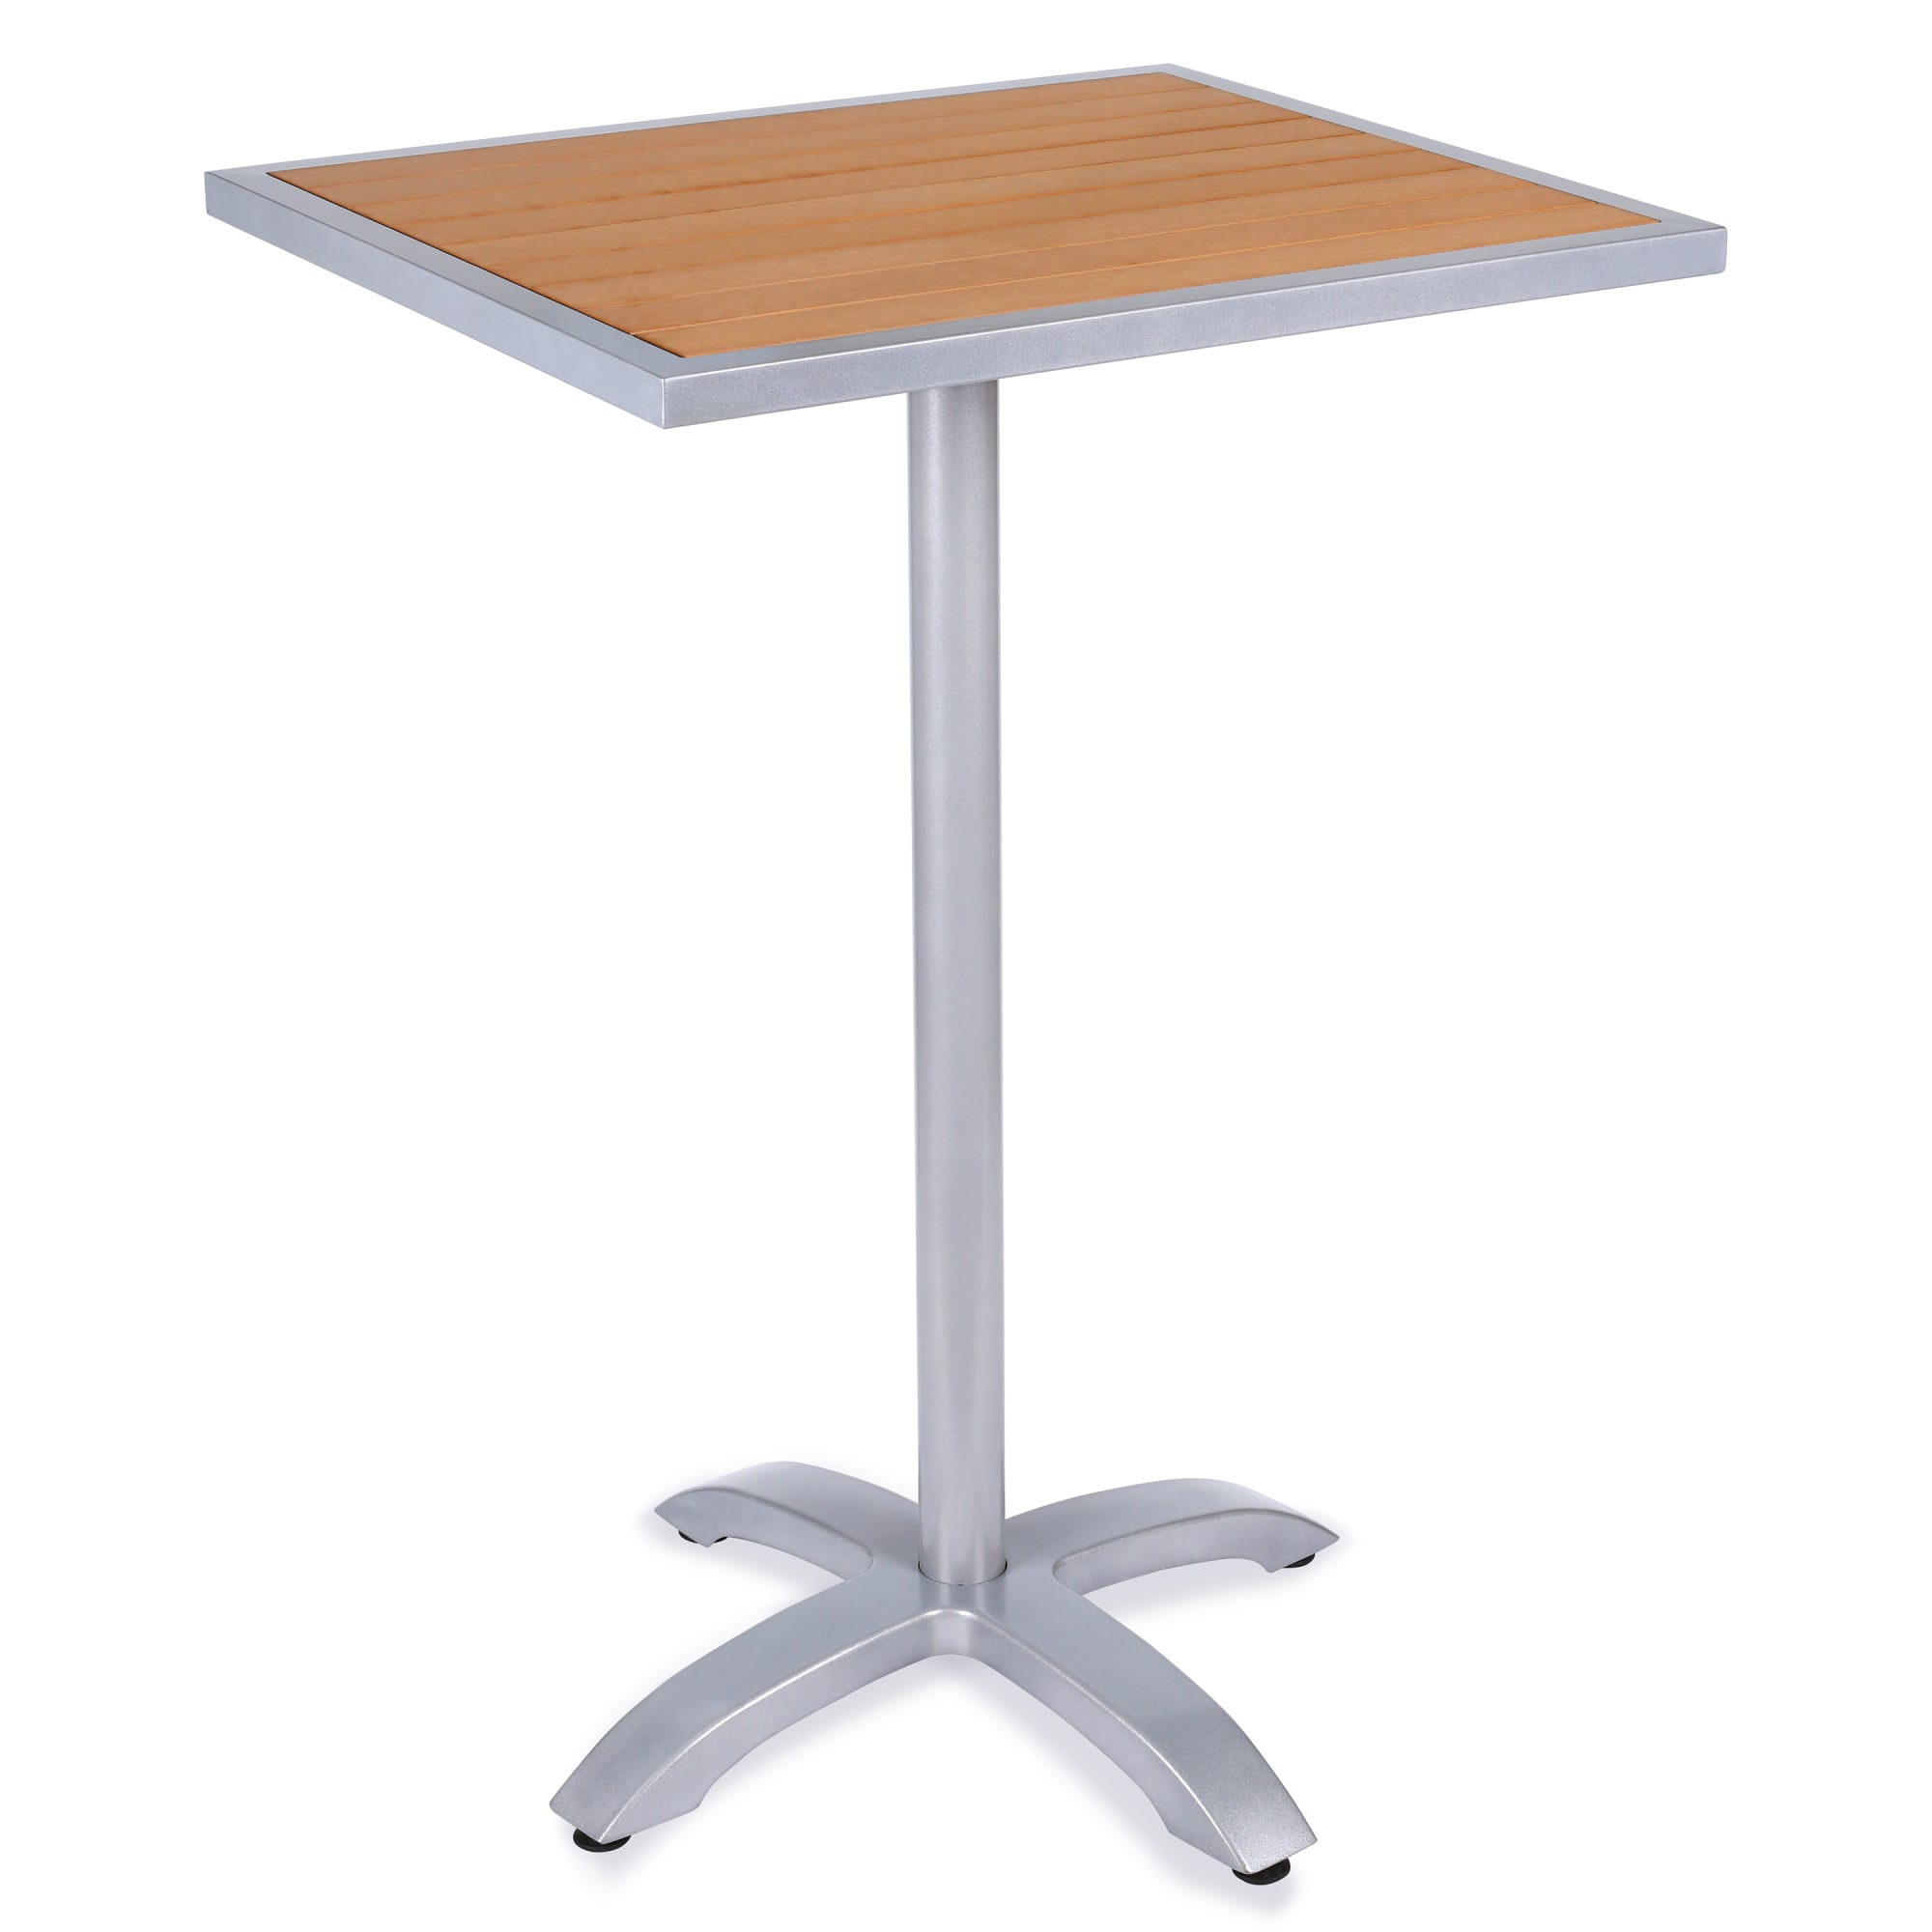 Aluminum Patio Tables with Plastic Teak Top - Bar Height with Aluminum Patio Tables with Plastic Teak Top - Bar Height